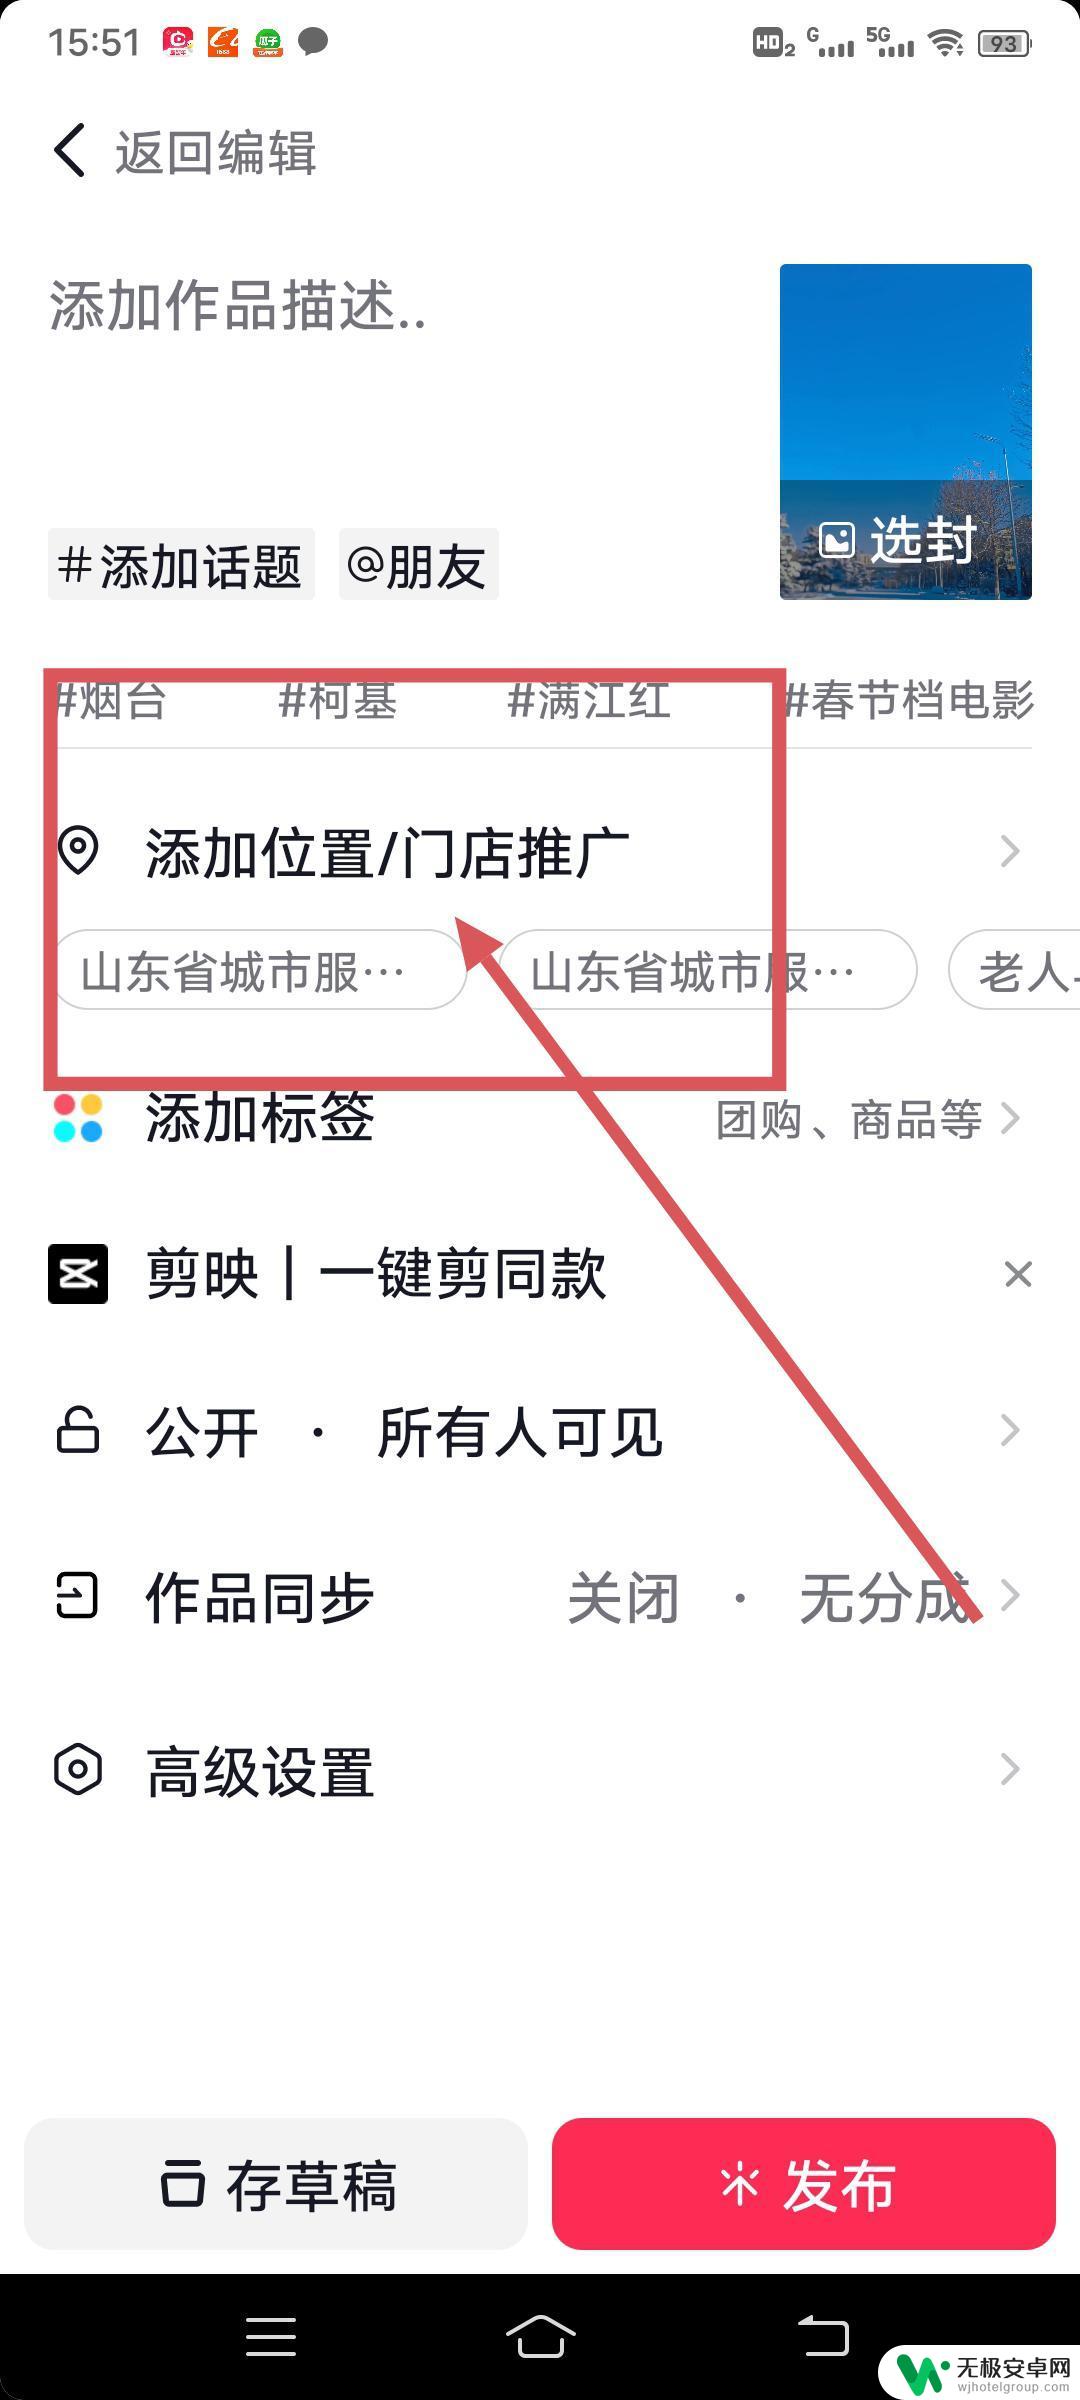 抖音上怎么挂杭州景区29.9 去风景地拍摄抖音视频如何链接景区票价